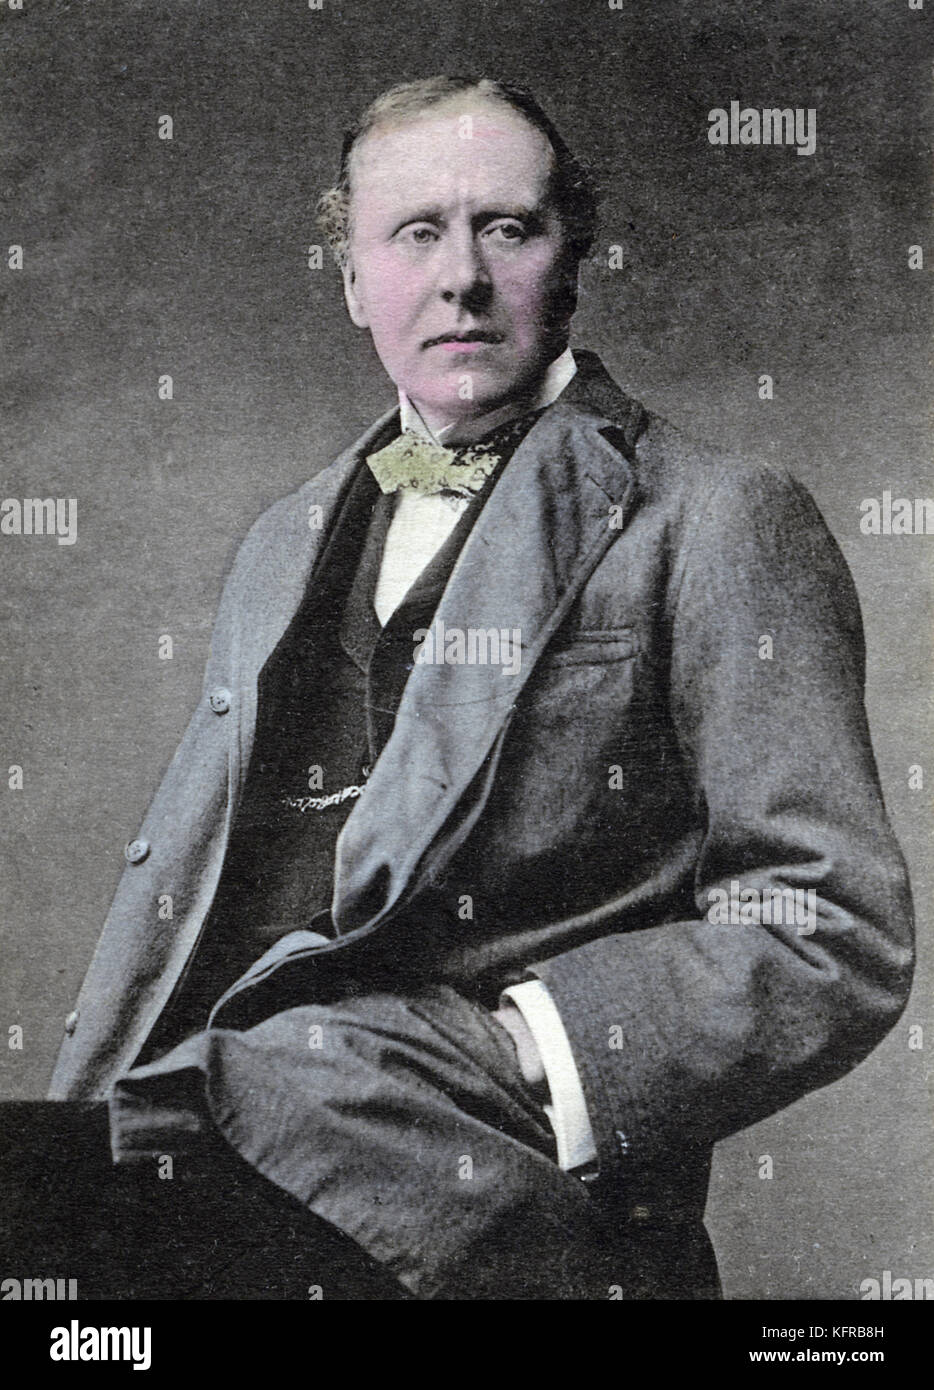 Herbert Beerbohm Tree - retrato. El actor y director de teatro en inglés, el 17 de diciembre de 1852 - 2 de julio de 1917. Foto de stock